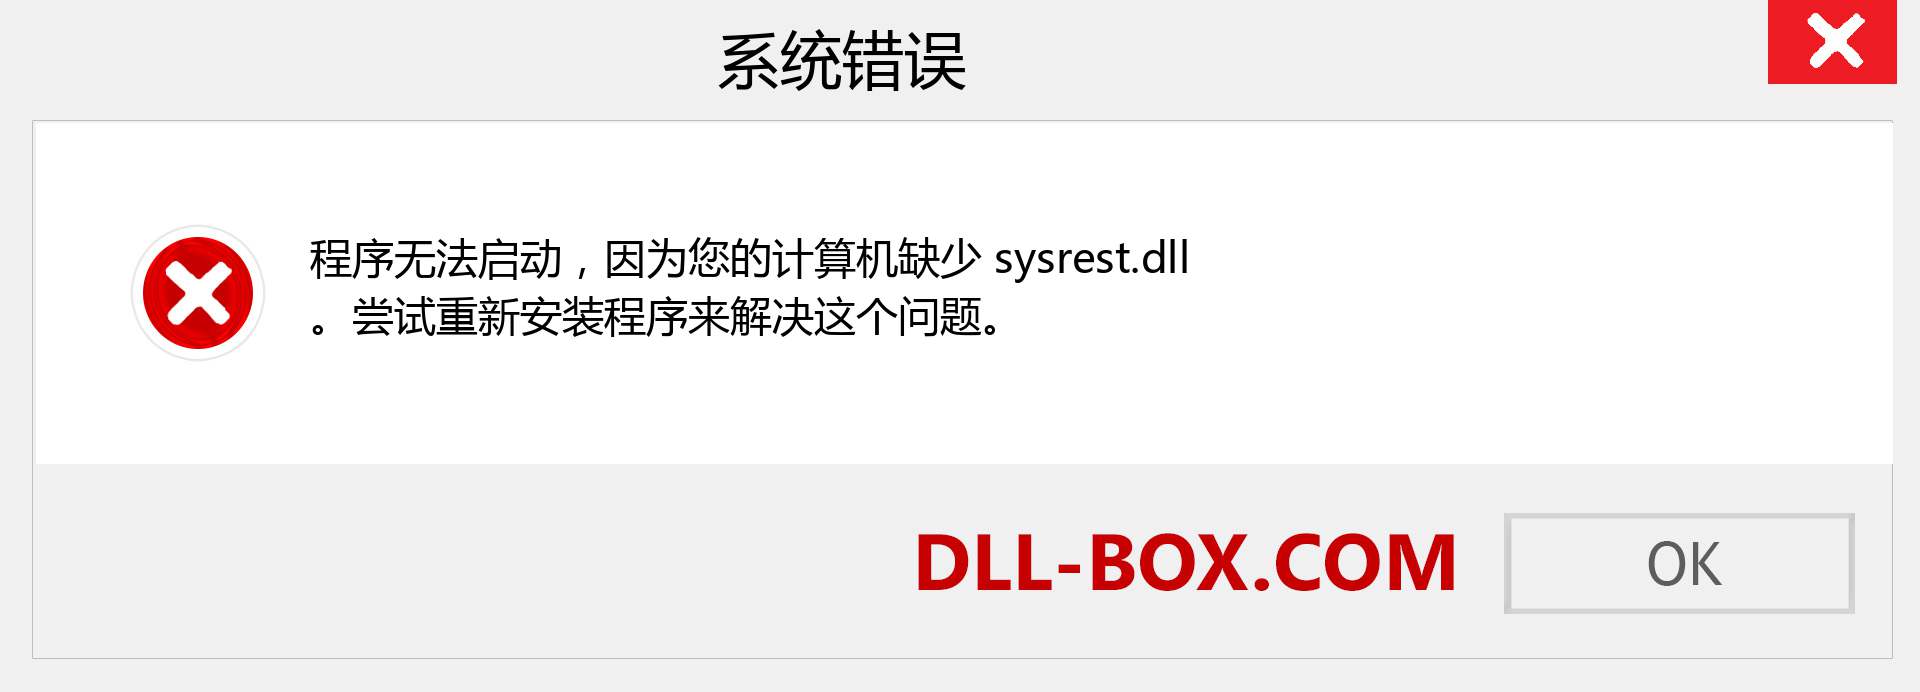 sysrest.dll 文件丢失？。 适用于 Windows 7、8、10 的下载 - 修复 Windows、照片、图像上的 sysrest dll 丢失错误